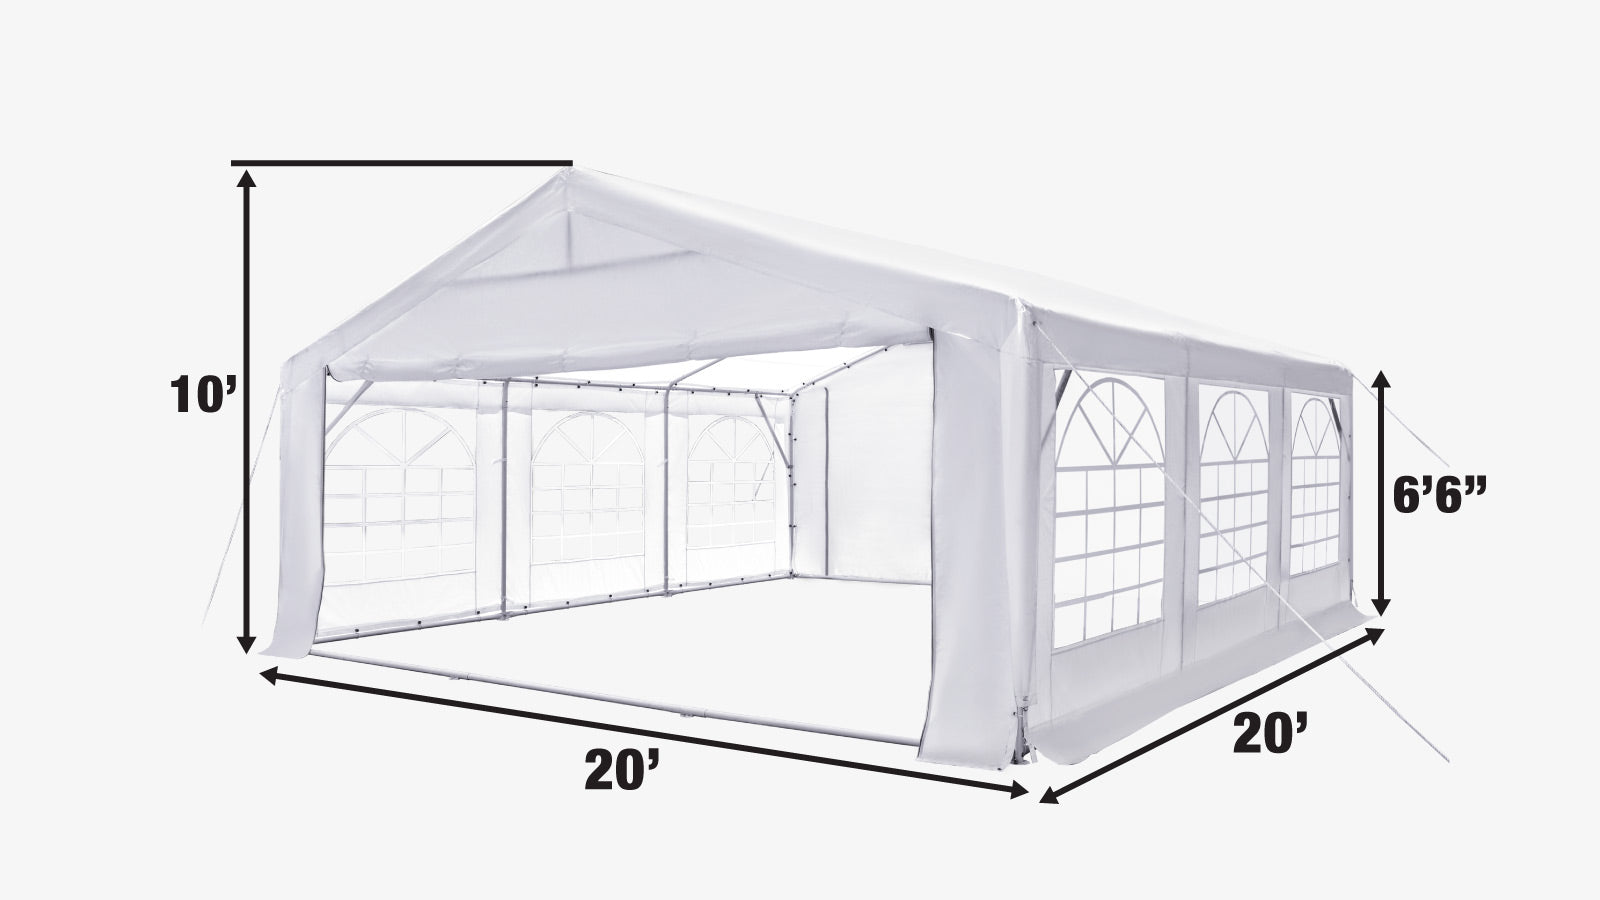 TMG Industrial 20' x 20' Tente de fête extérieure robuste avec parois latérales amovibles et portes enroulables, couverture en PE de 11 oz, plafond de 6'6